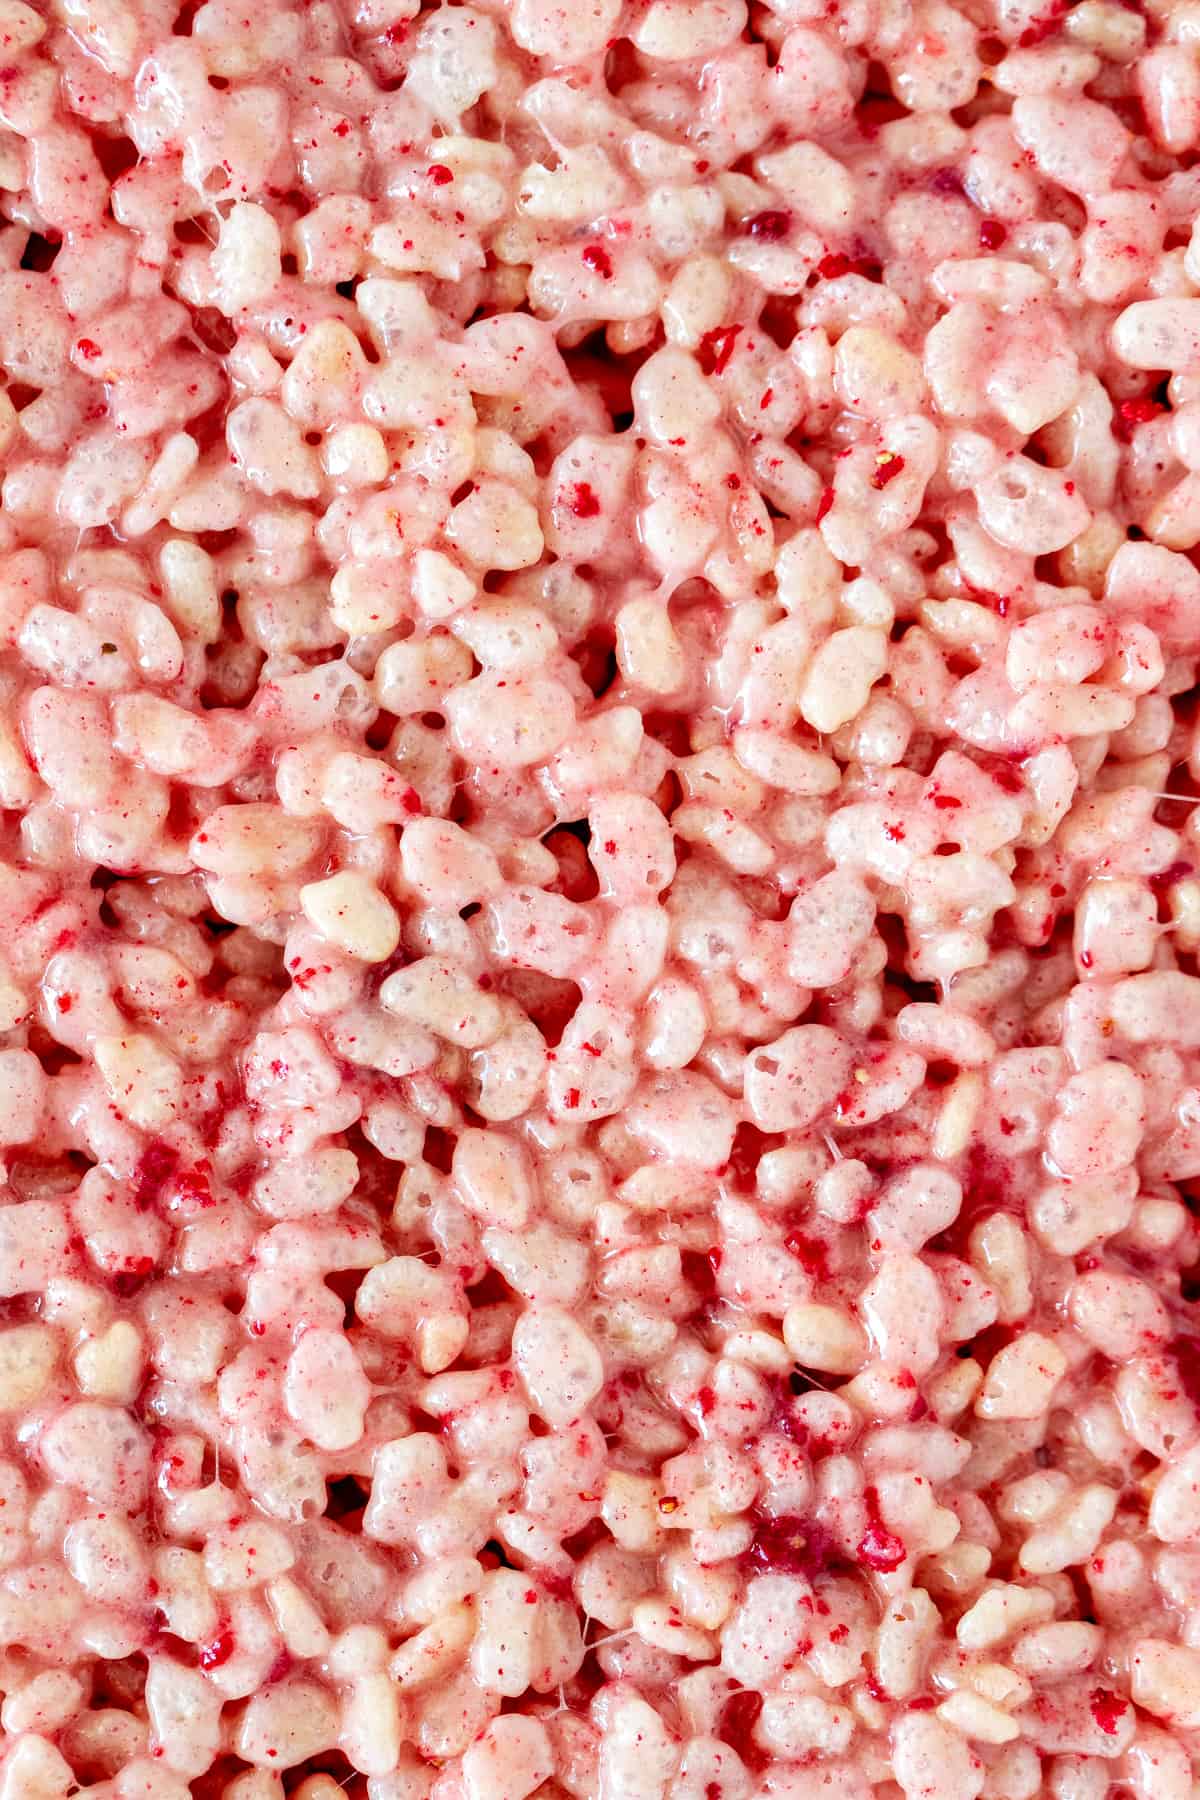 Pan of pink Rice Krispie treats